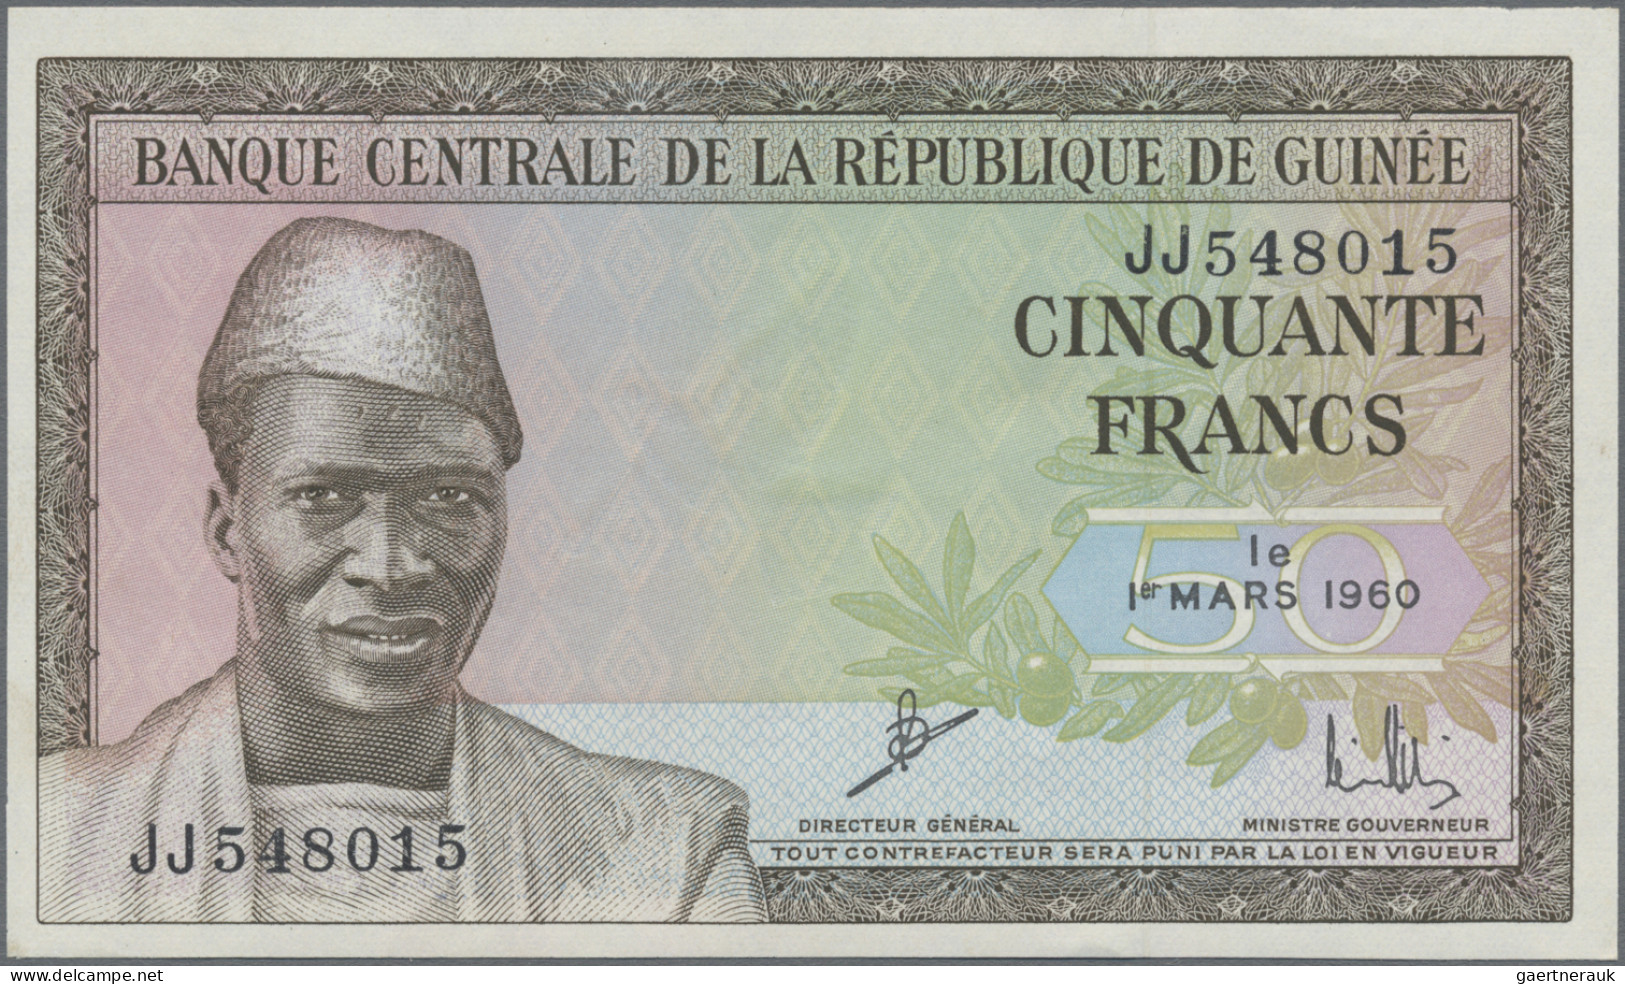 Guinea: Banque de la République de Guinée, series 1960, set with 50 Francs (P.12